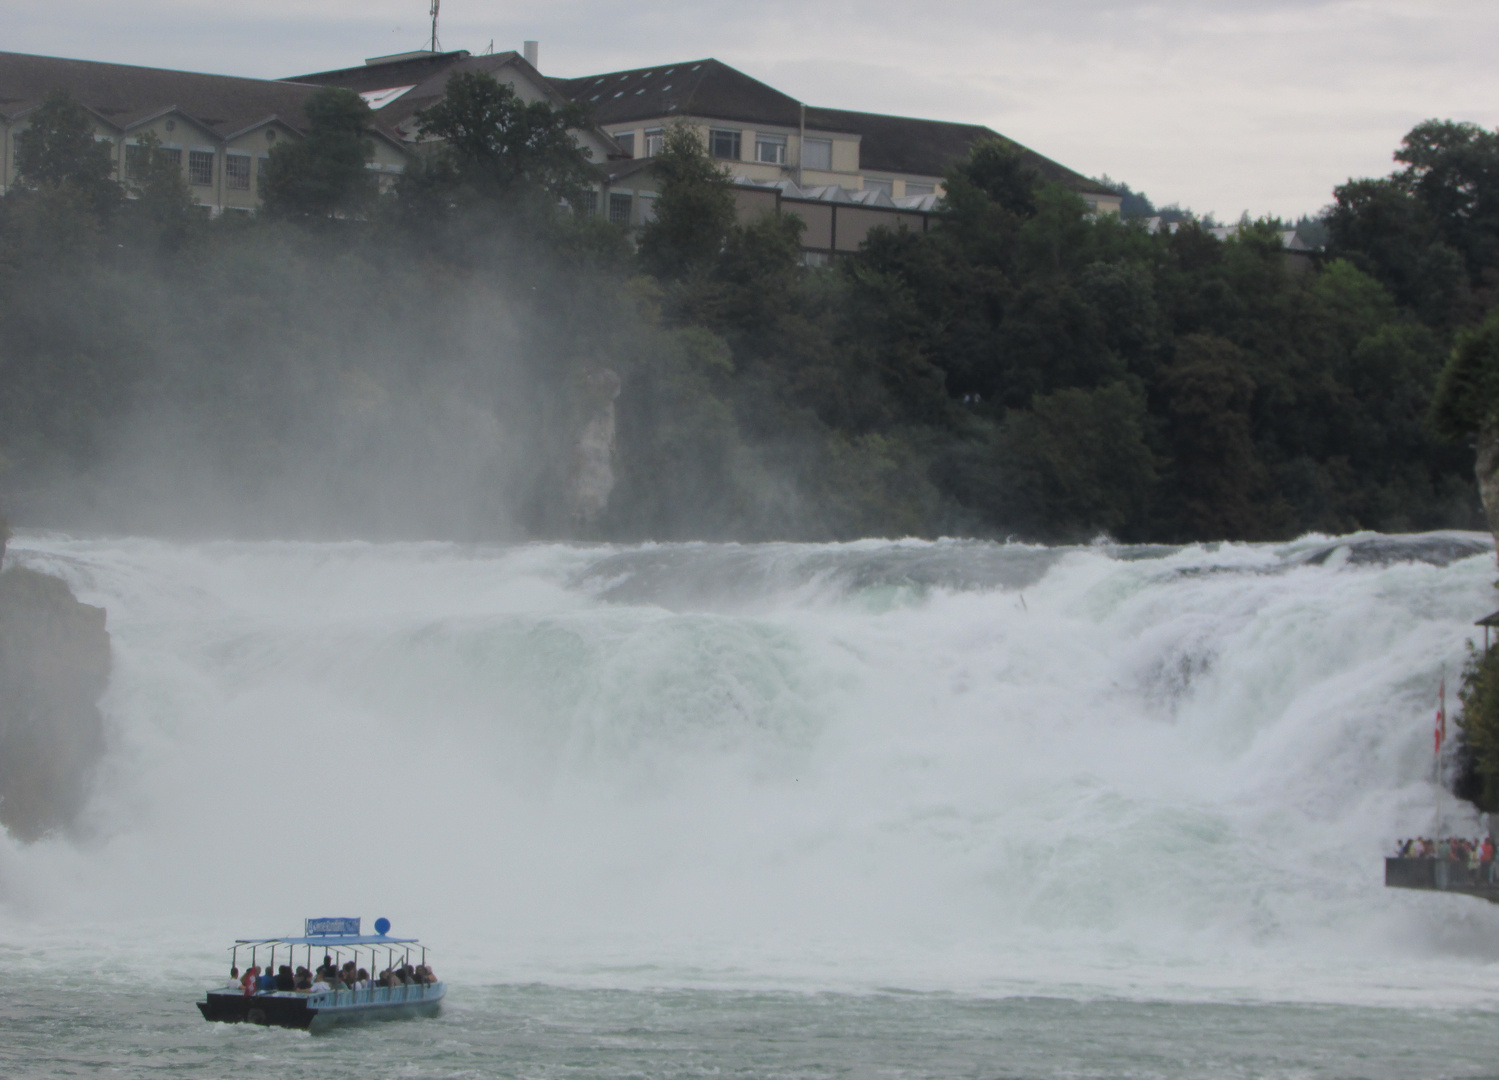 When the Rhein Falls